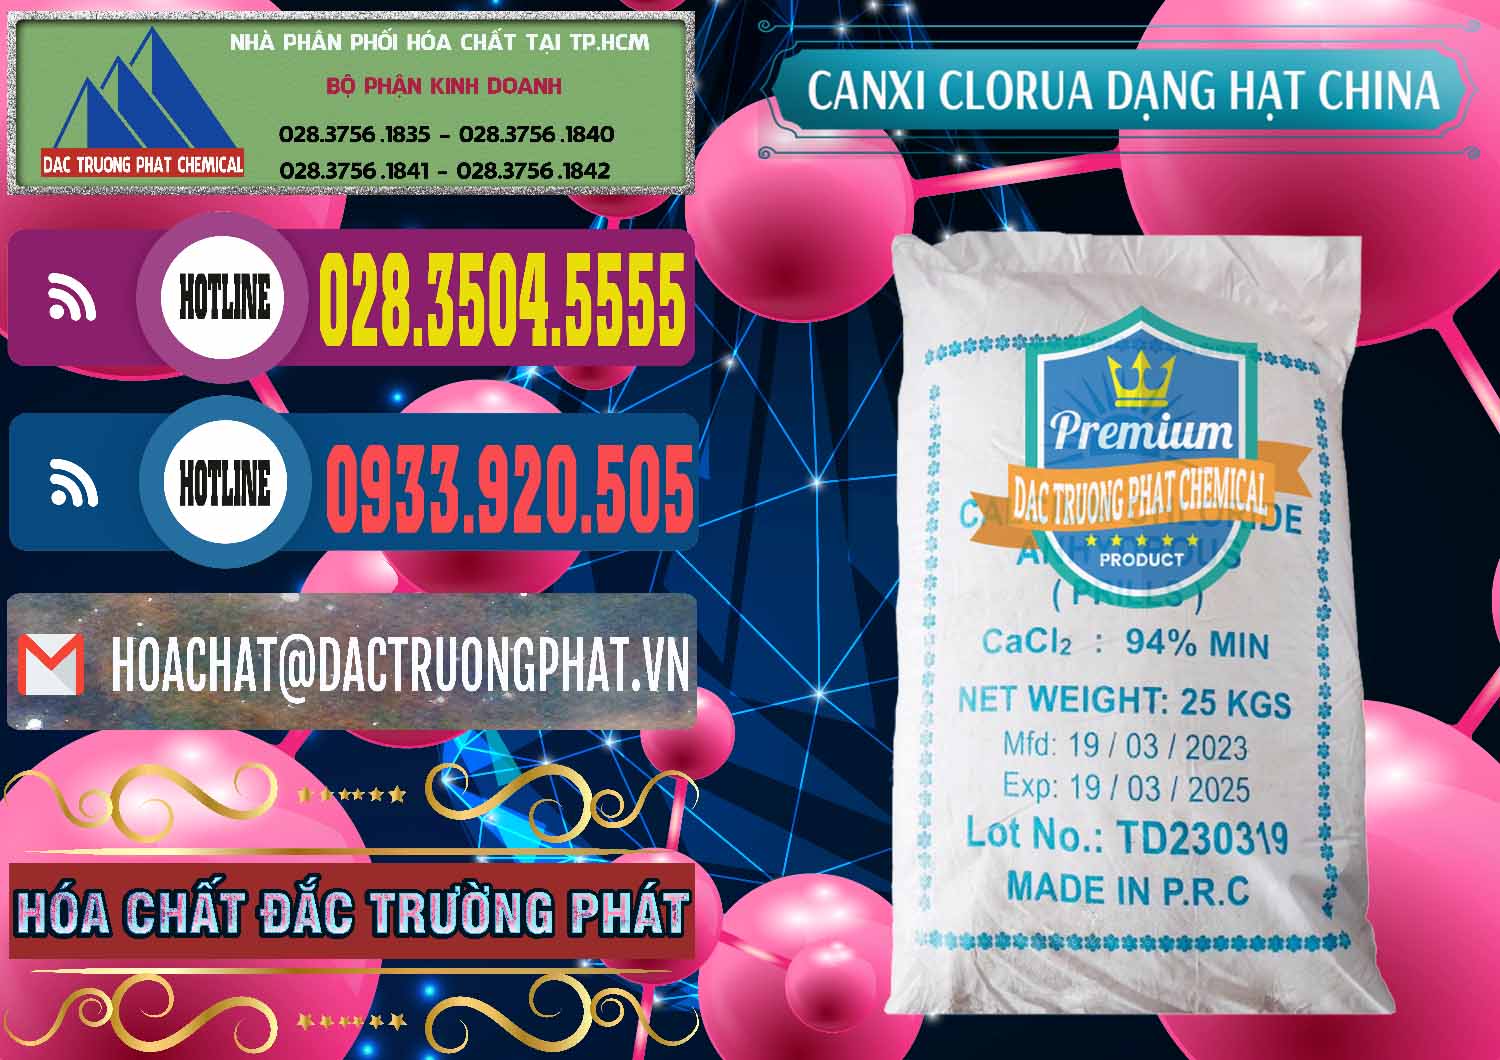 Nơi chuyên cung ứng _ bán CaCl2 – Canxi Clorua 94% Dạng Hạt Trung Quốc China - 0373 - Đơn vị phân phối và bán hóa chất tại TP.HCM - muabanhoachat.com.vn